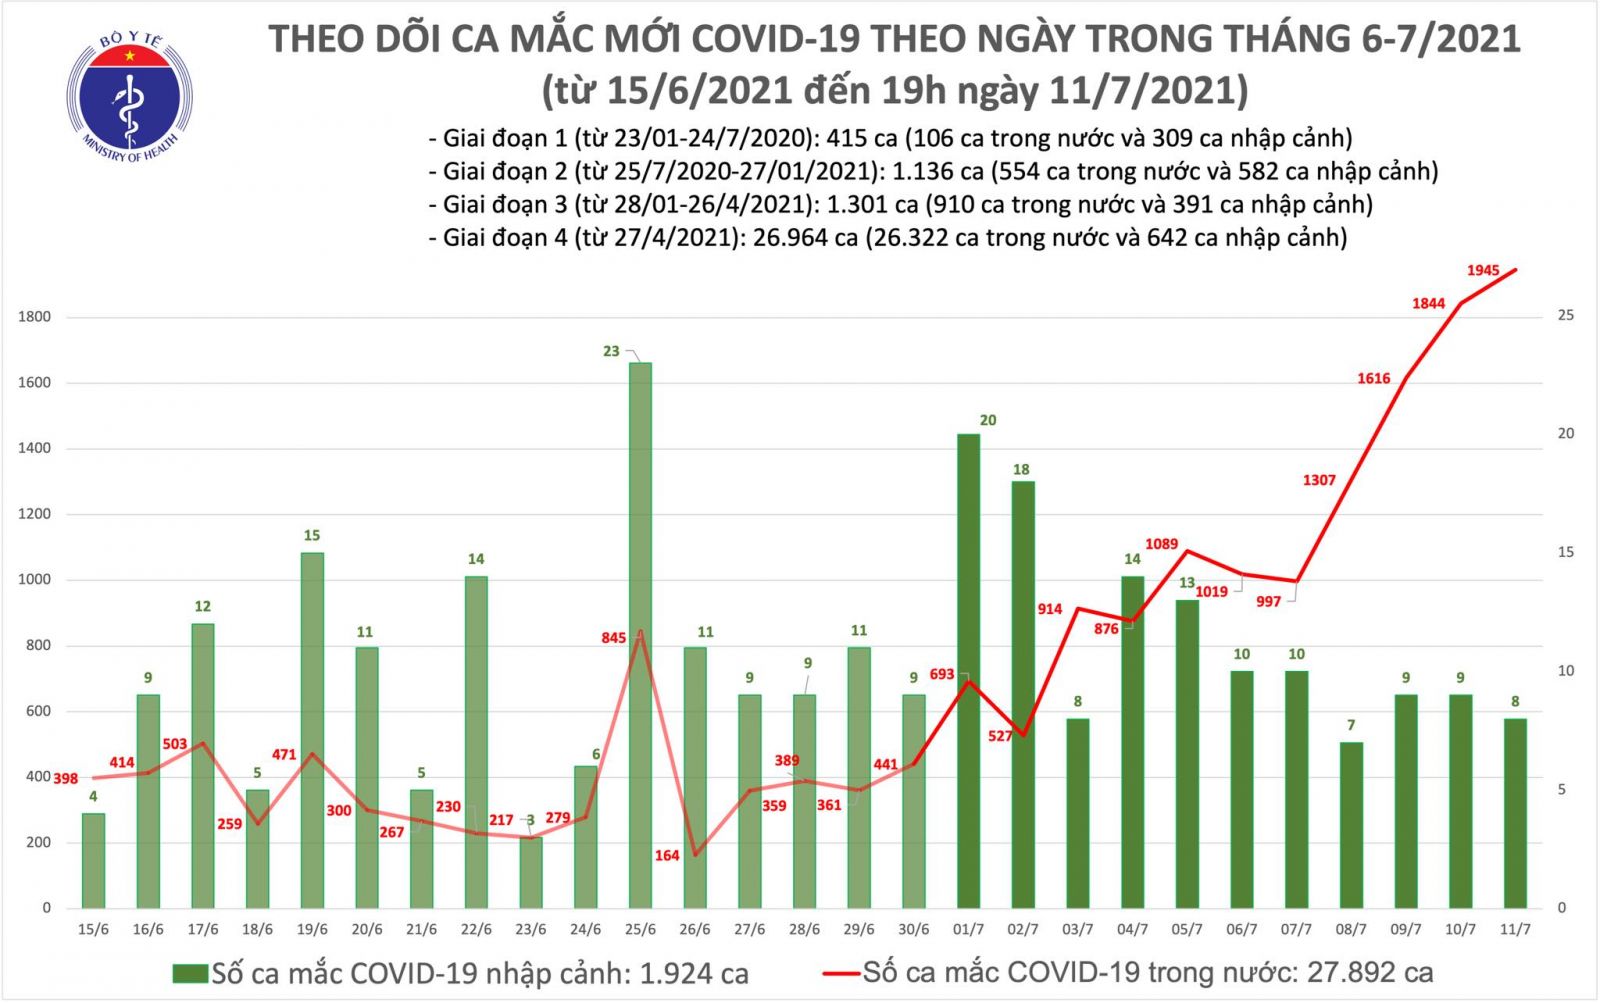 Tối 11/7: Có thêm 713 ca mắc COVID-19 mới, tổng số mắc trong ngày là 1.953 ca